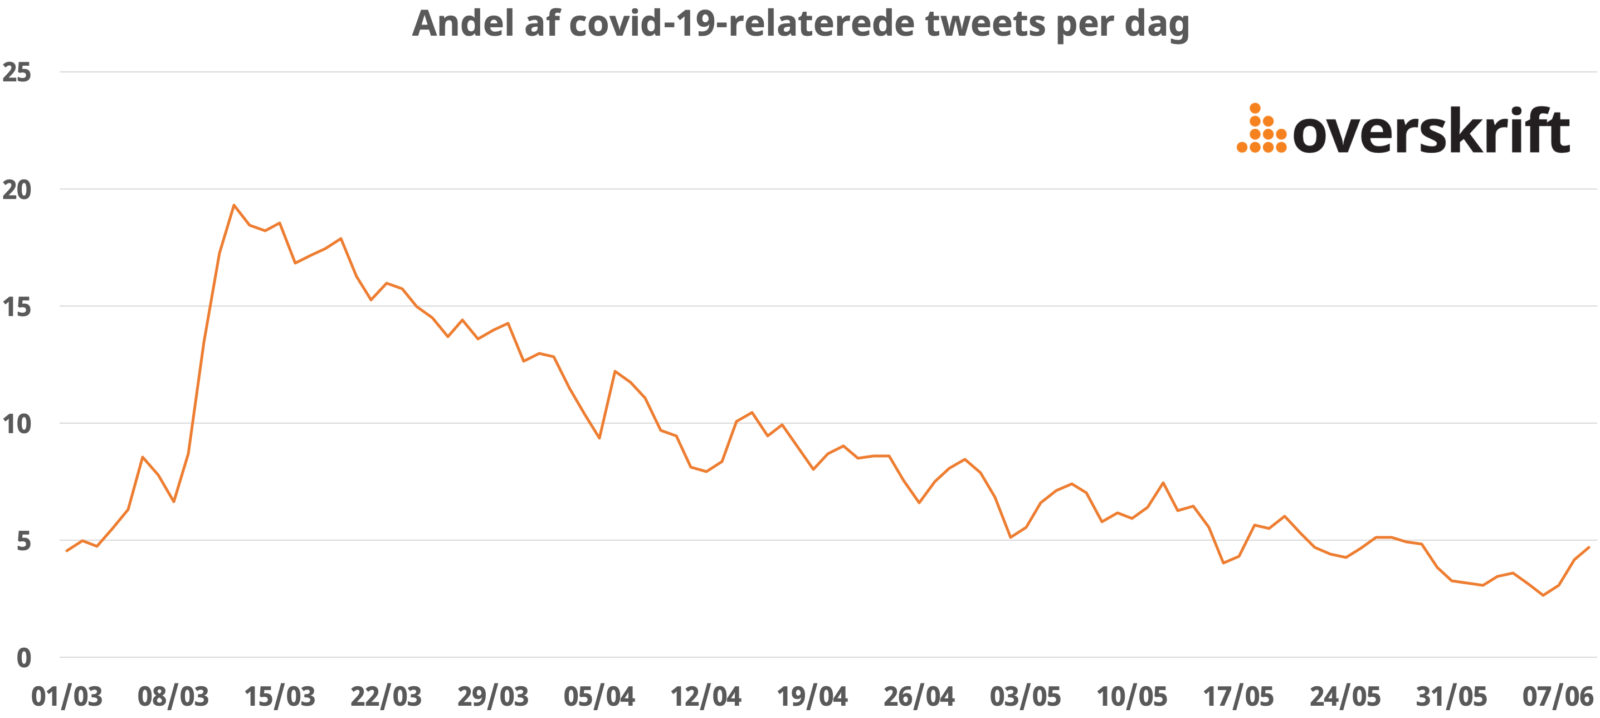 Graf med andelen af danske tweets der kan relateres til Covid-19